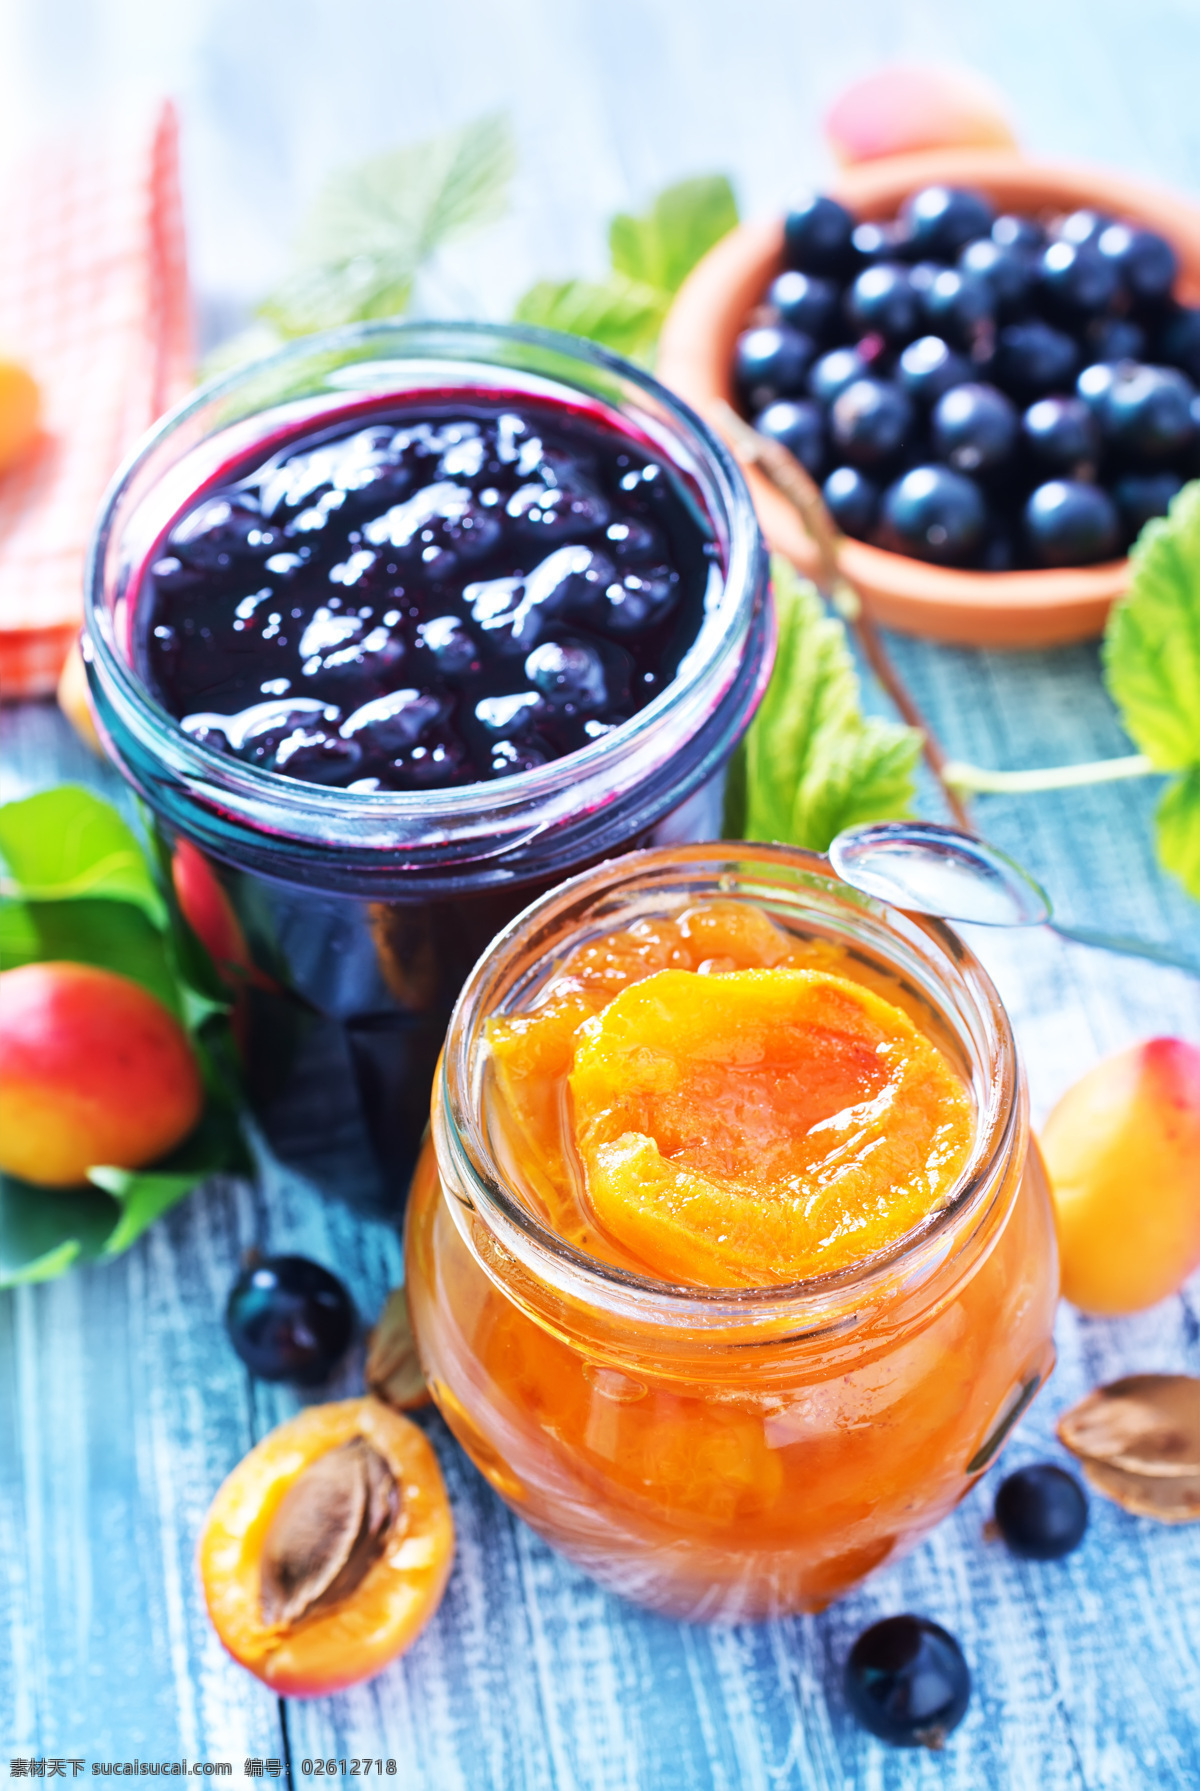 水果罐头 新鲜水果 蓝莓 杏子 水果摄影 新鲜果实 水果图片 餐饮美食